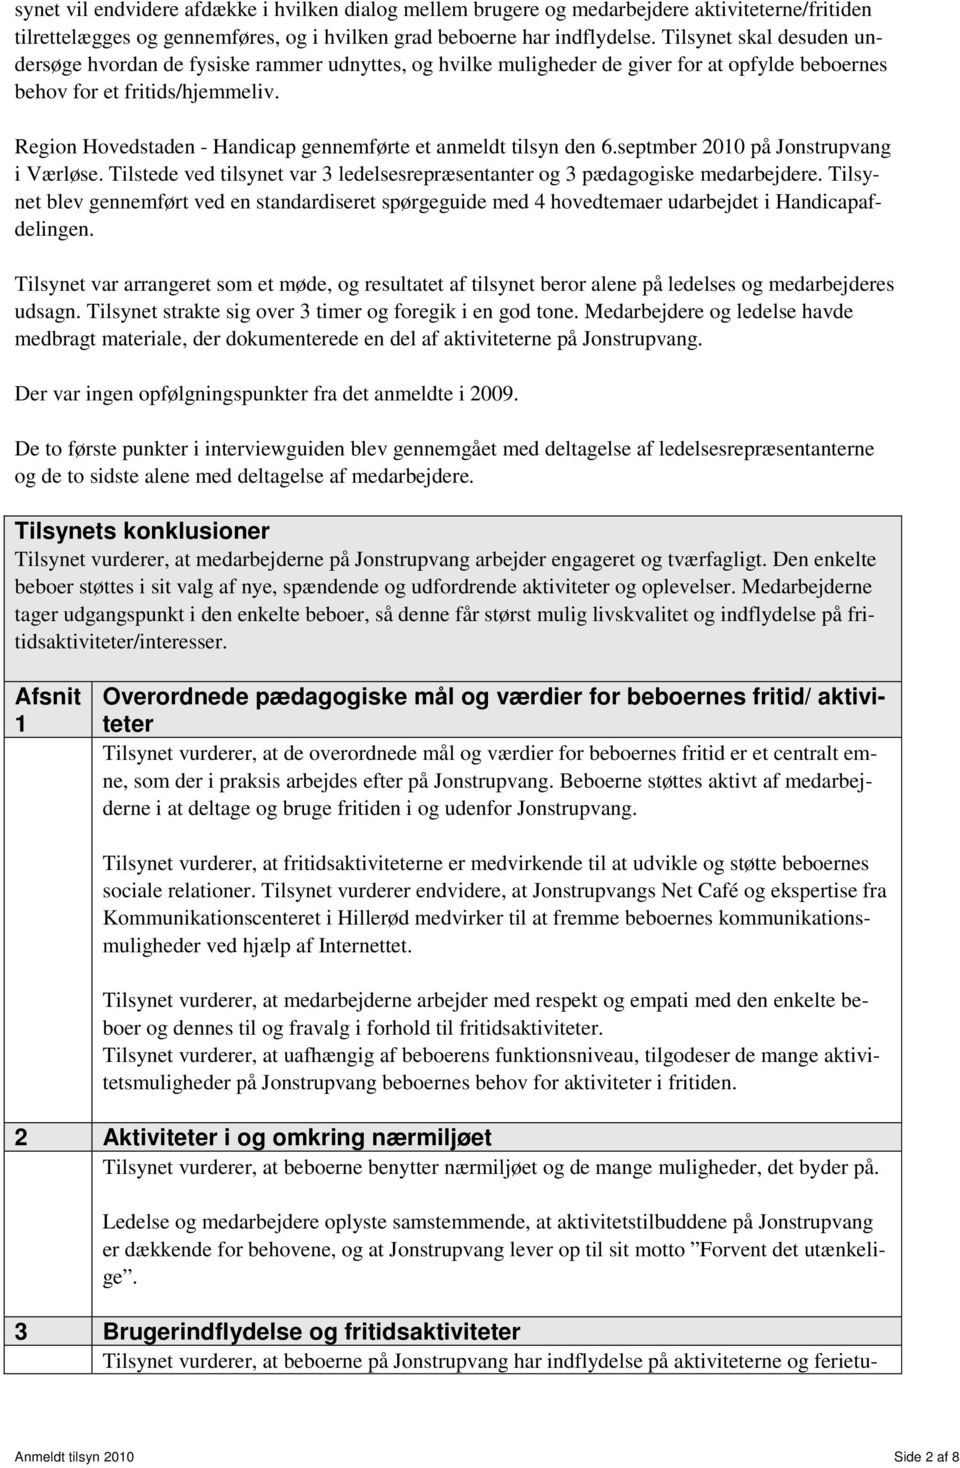 Region Hovedstaden - Handicap gennemførte et anmeldt tilsyn den 6.septmber 2010 på Jonstrupvang i Værløse. Tilstede ved tilsynet var 3 ledelsesrepræsentanter og 3 pædagogiske medarbejdere.